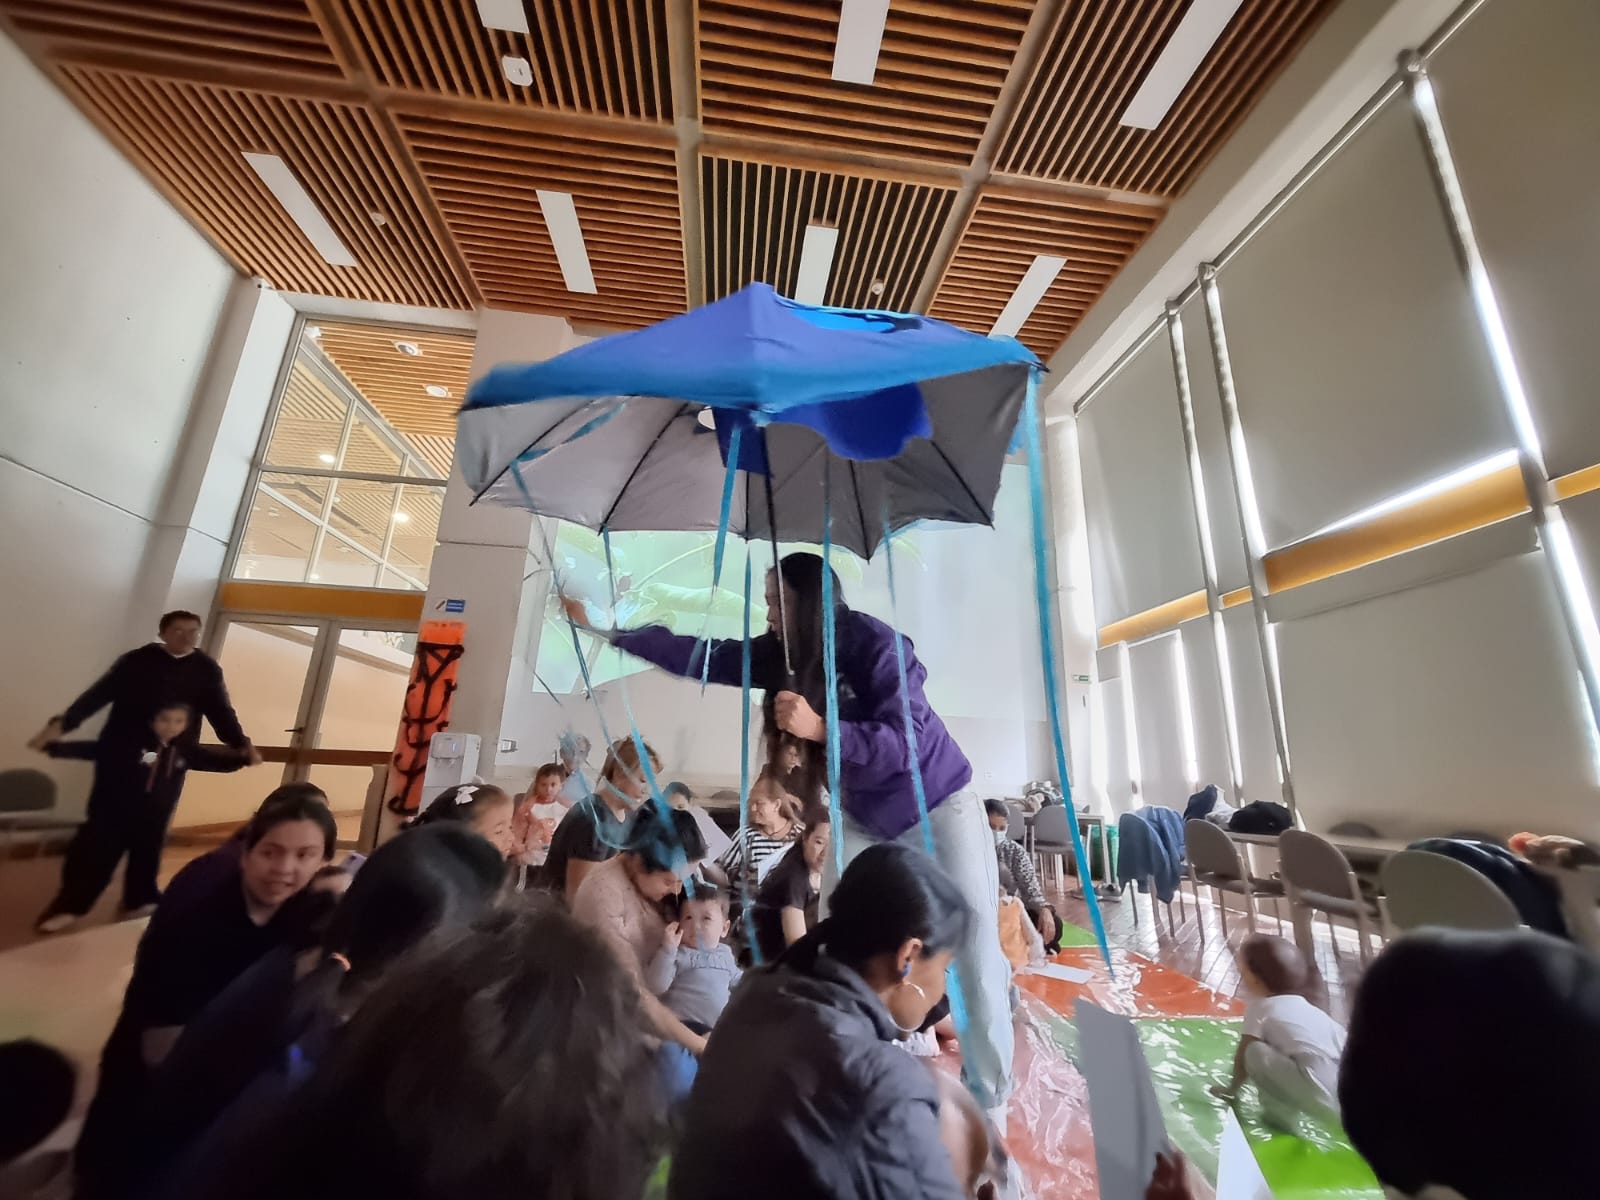 niñas y niños en medio de una obra de títeres mientras interactúan con un paraguas azul